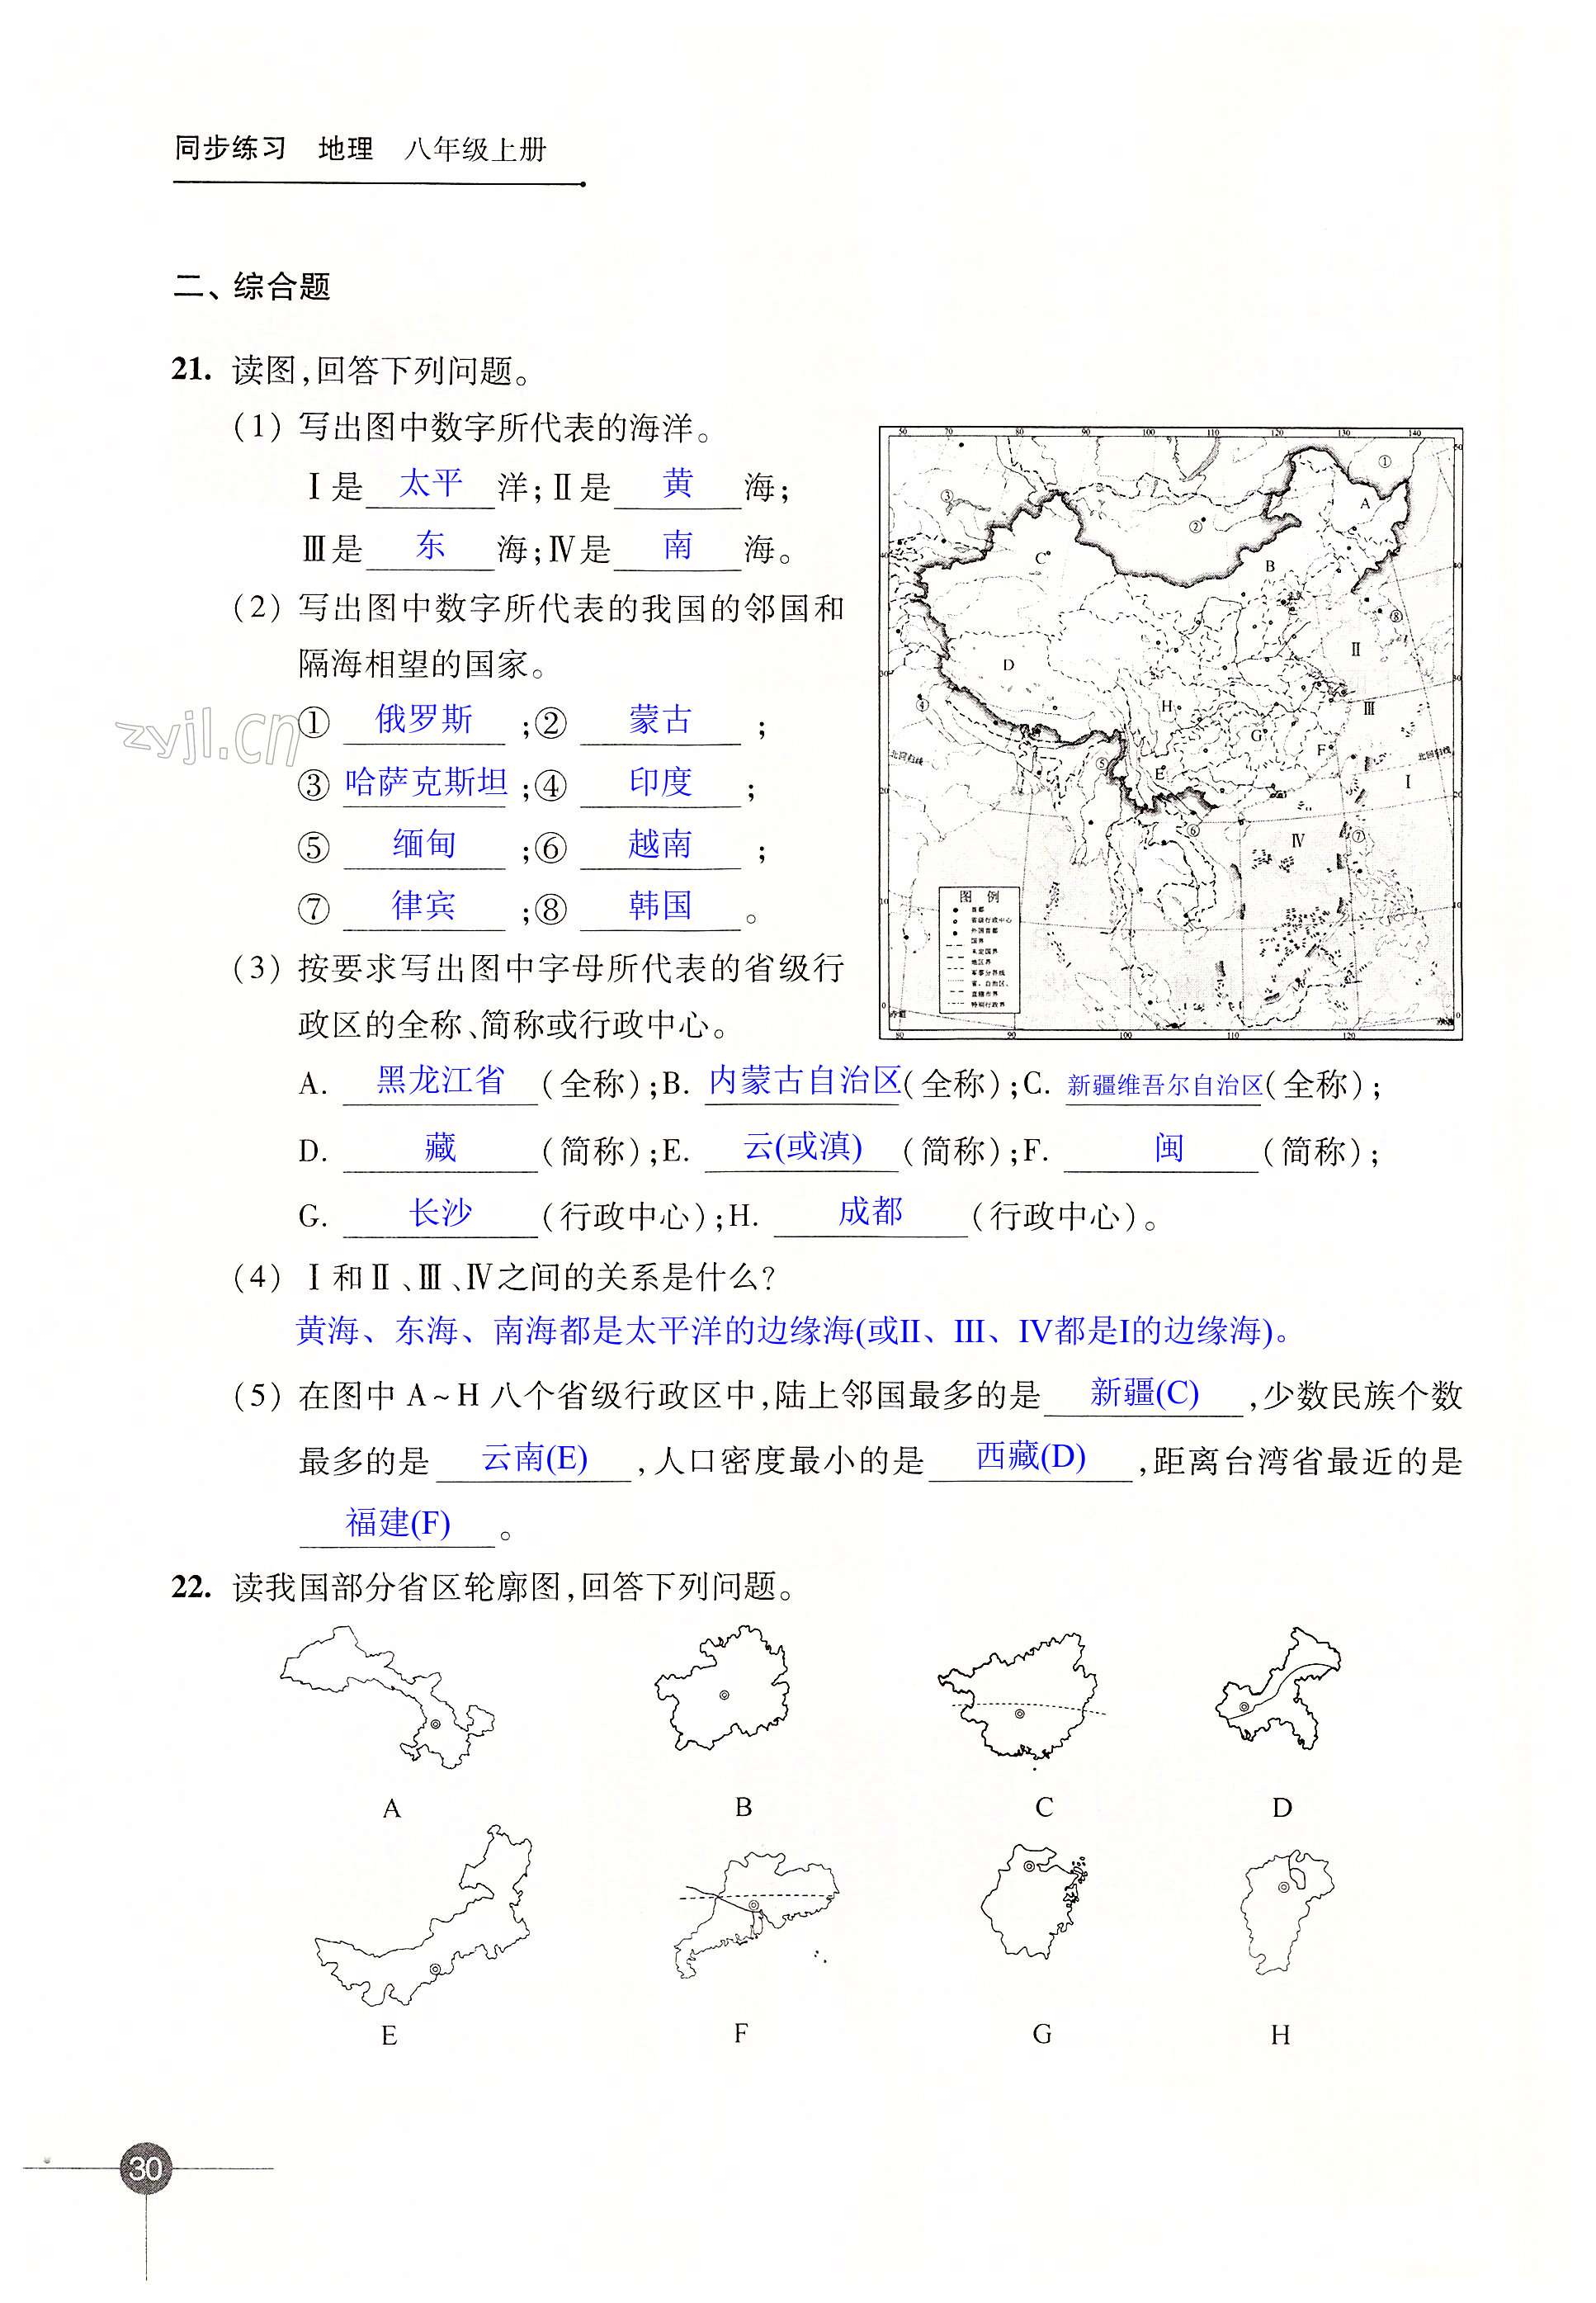 第一章 中国的疆域与人口 - 第30页